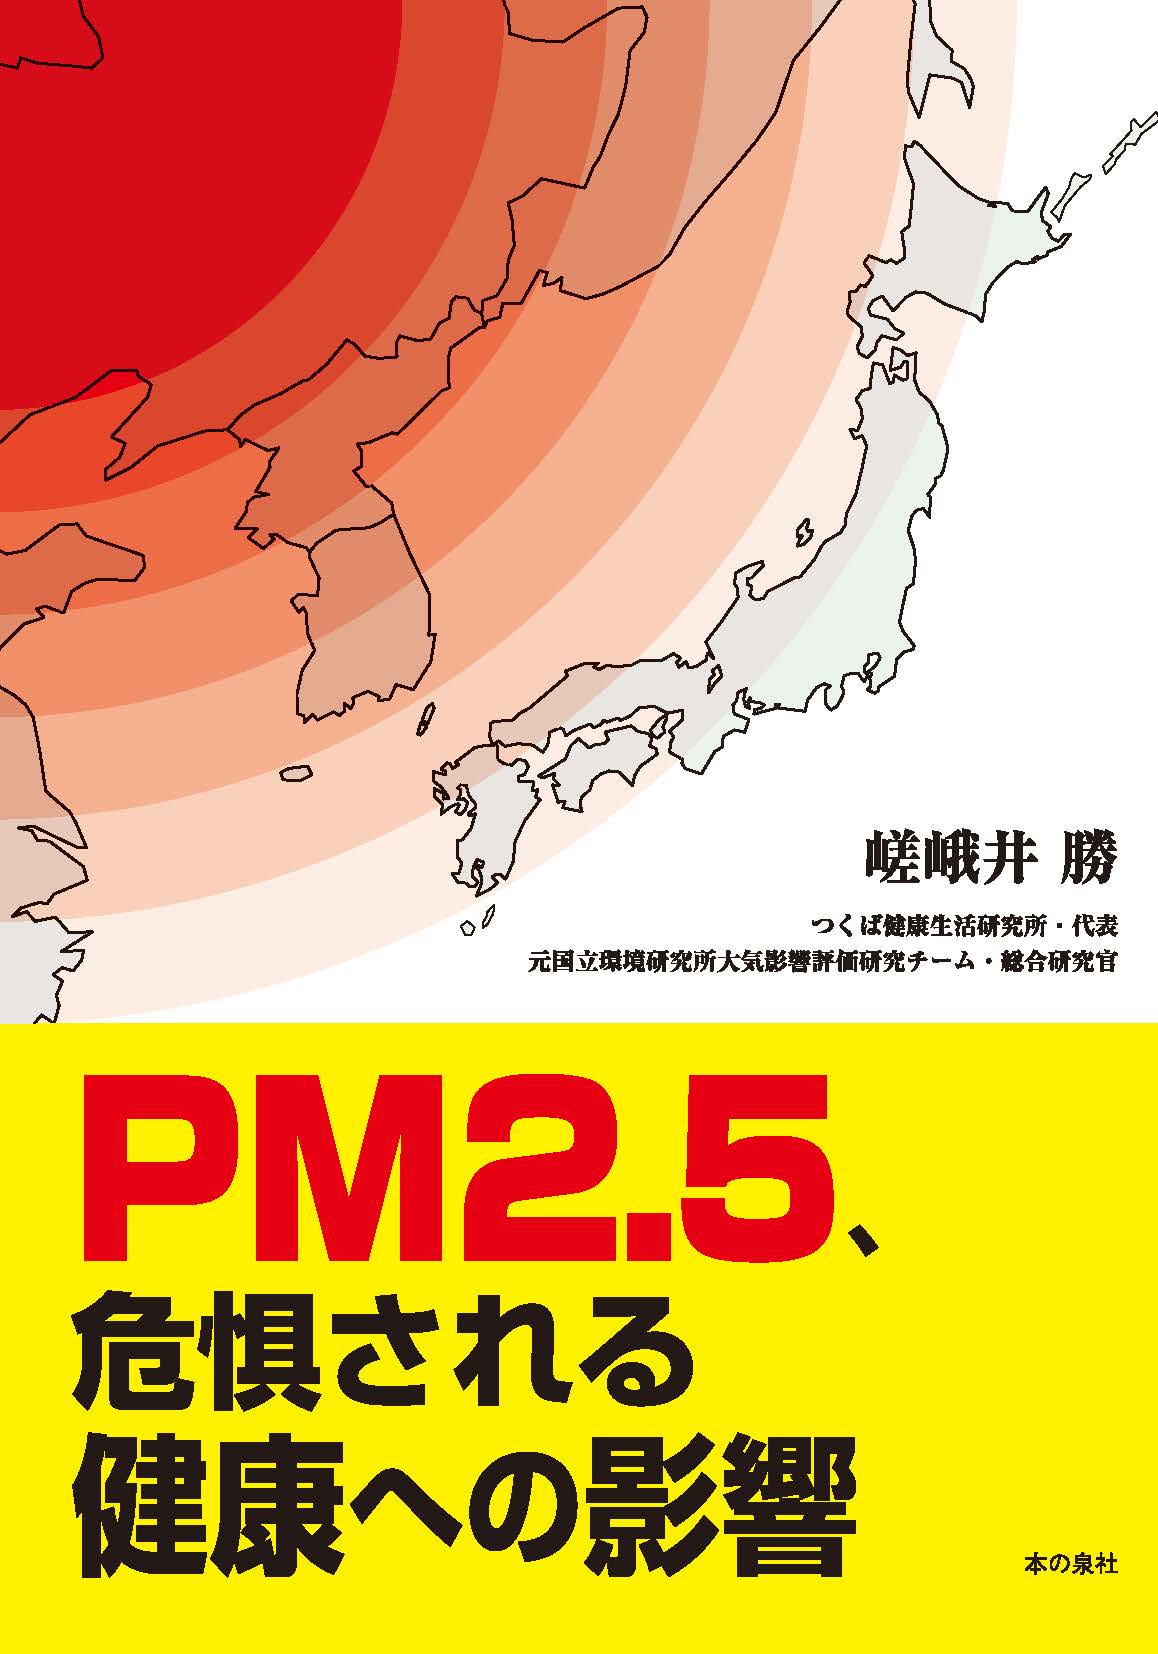 PM2.5、危惧される健康への影響